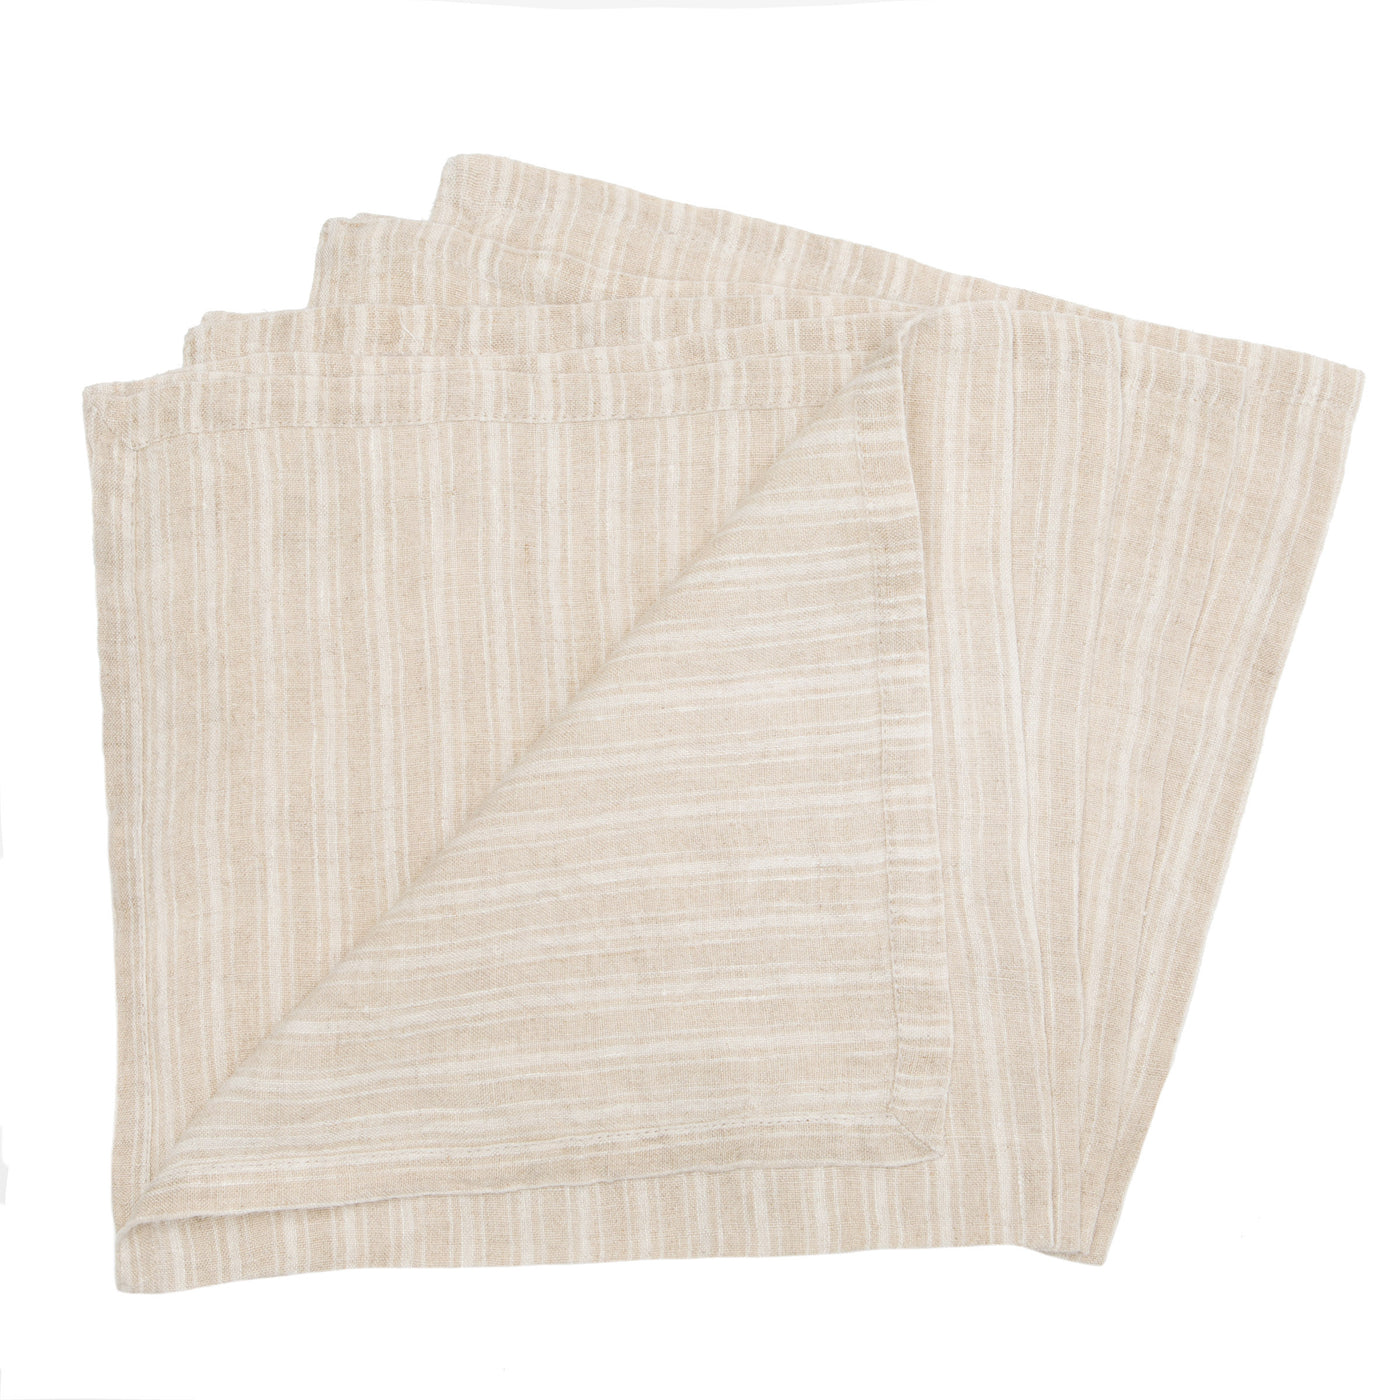 Boat Stripe Linen Napkins Natural & White, Set of 4